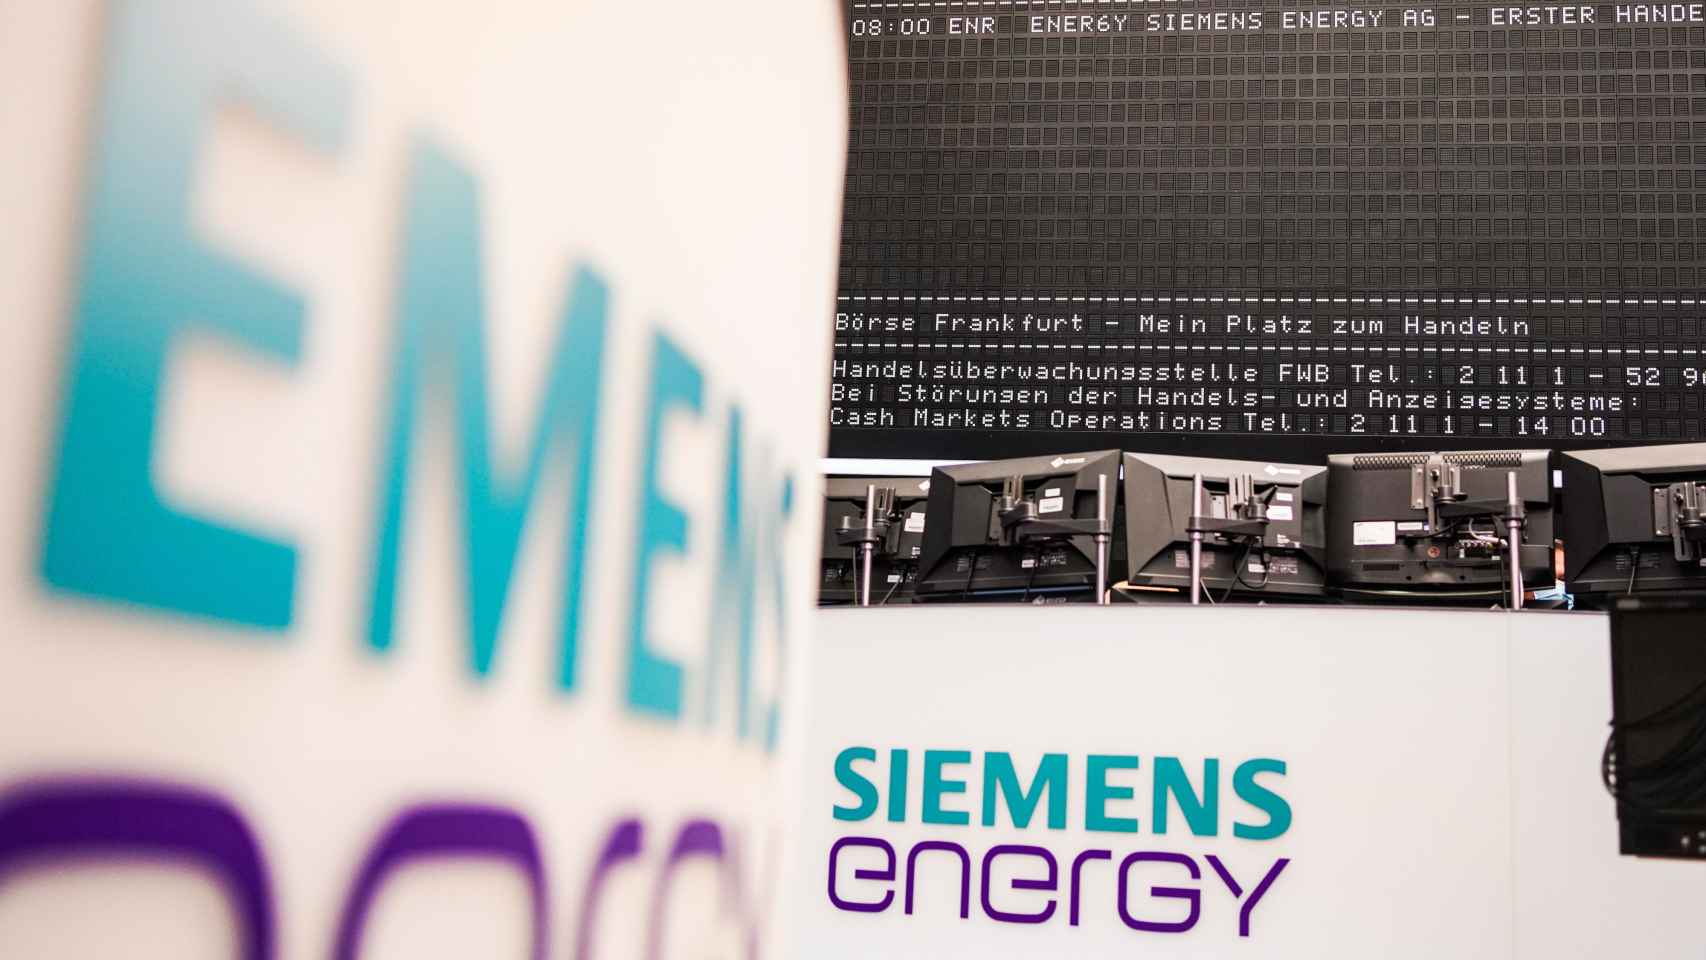 Oficinas de Siemens Energy.